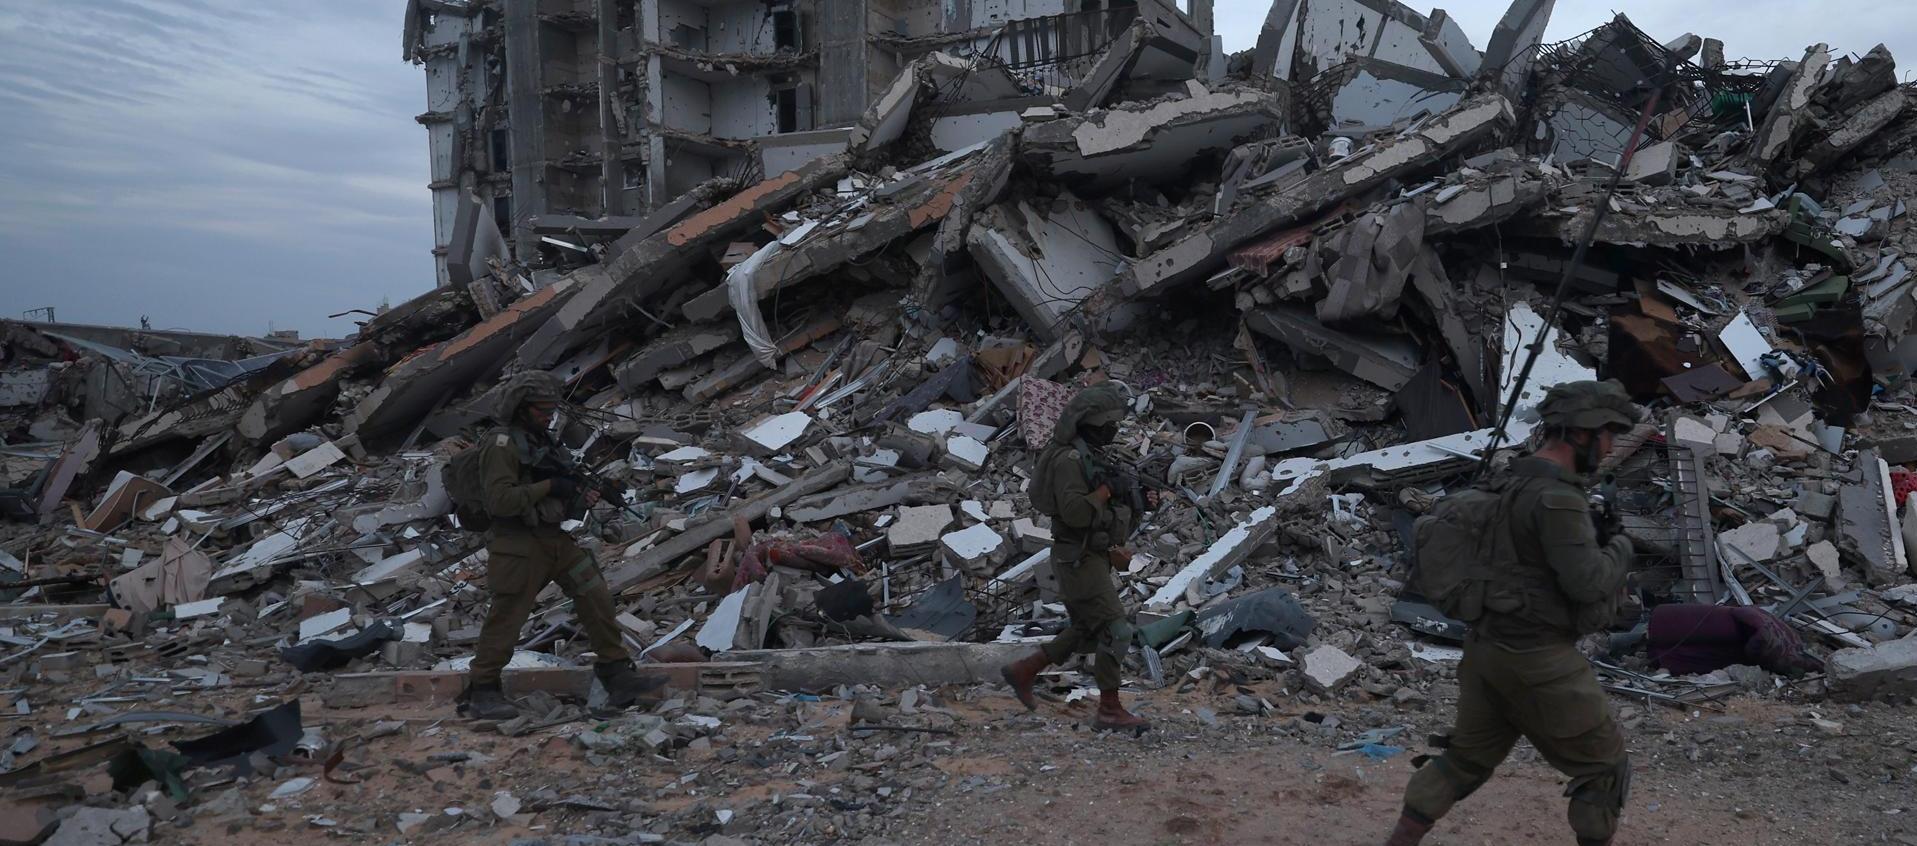 Foto de archivo de unos soldados israelíes caminando entre los escombros de edificios destruidos en la localidad palestina de Beit Lahia